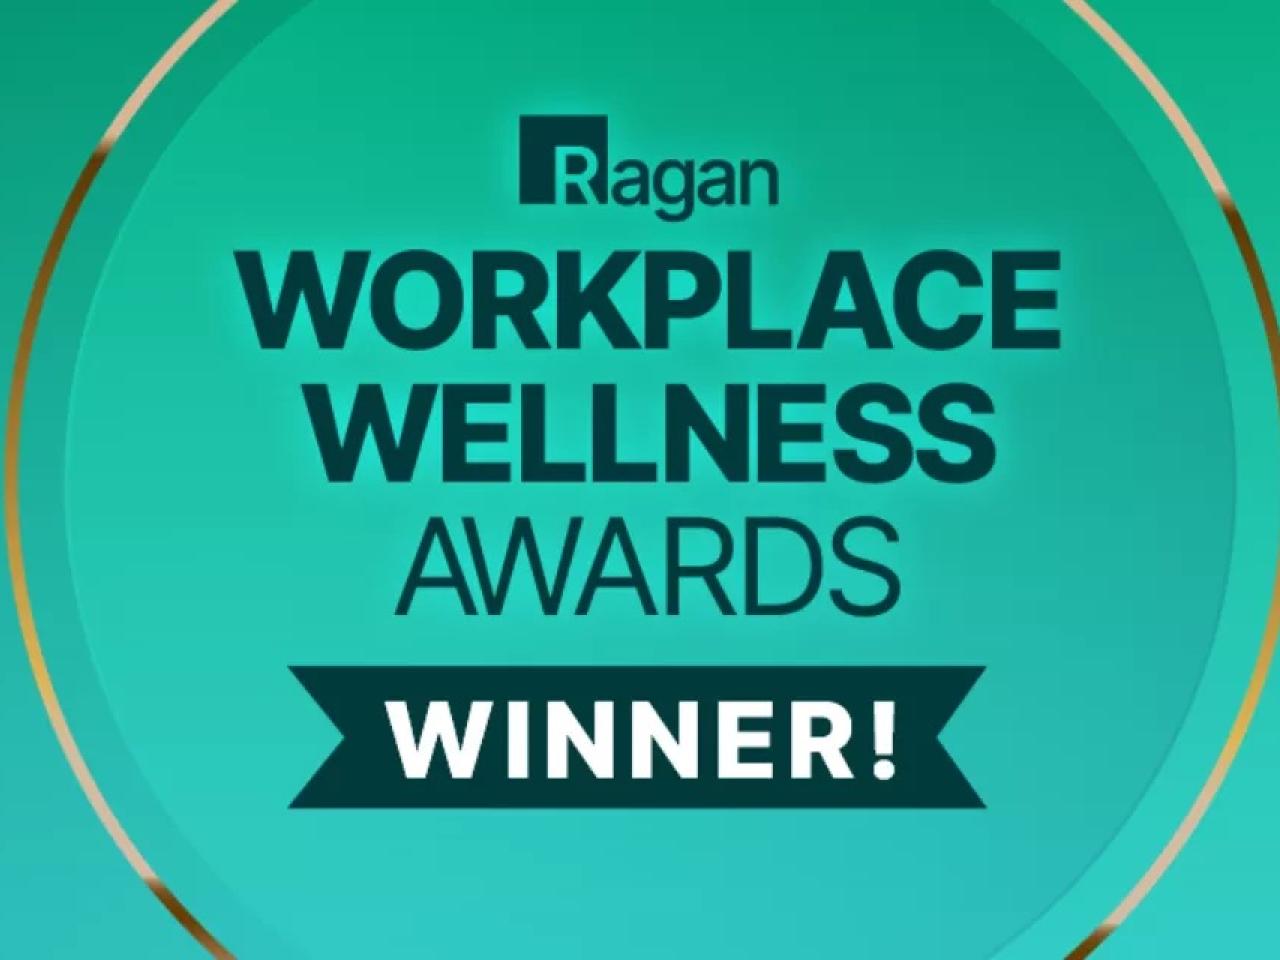 "Ragan Workplace Wellness Award Winner!"